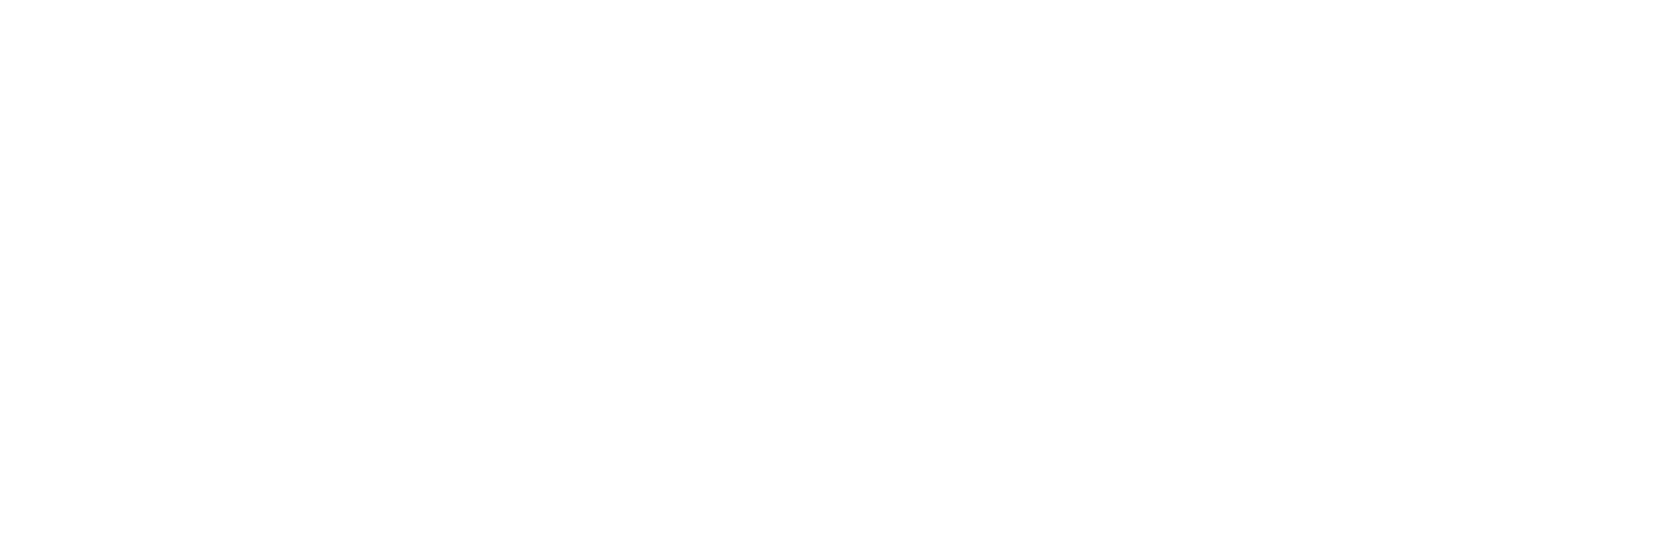 Gaztransport & Technigaz logo pour fonds sombres (PNG transparent)